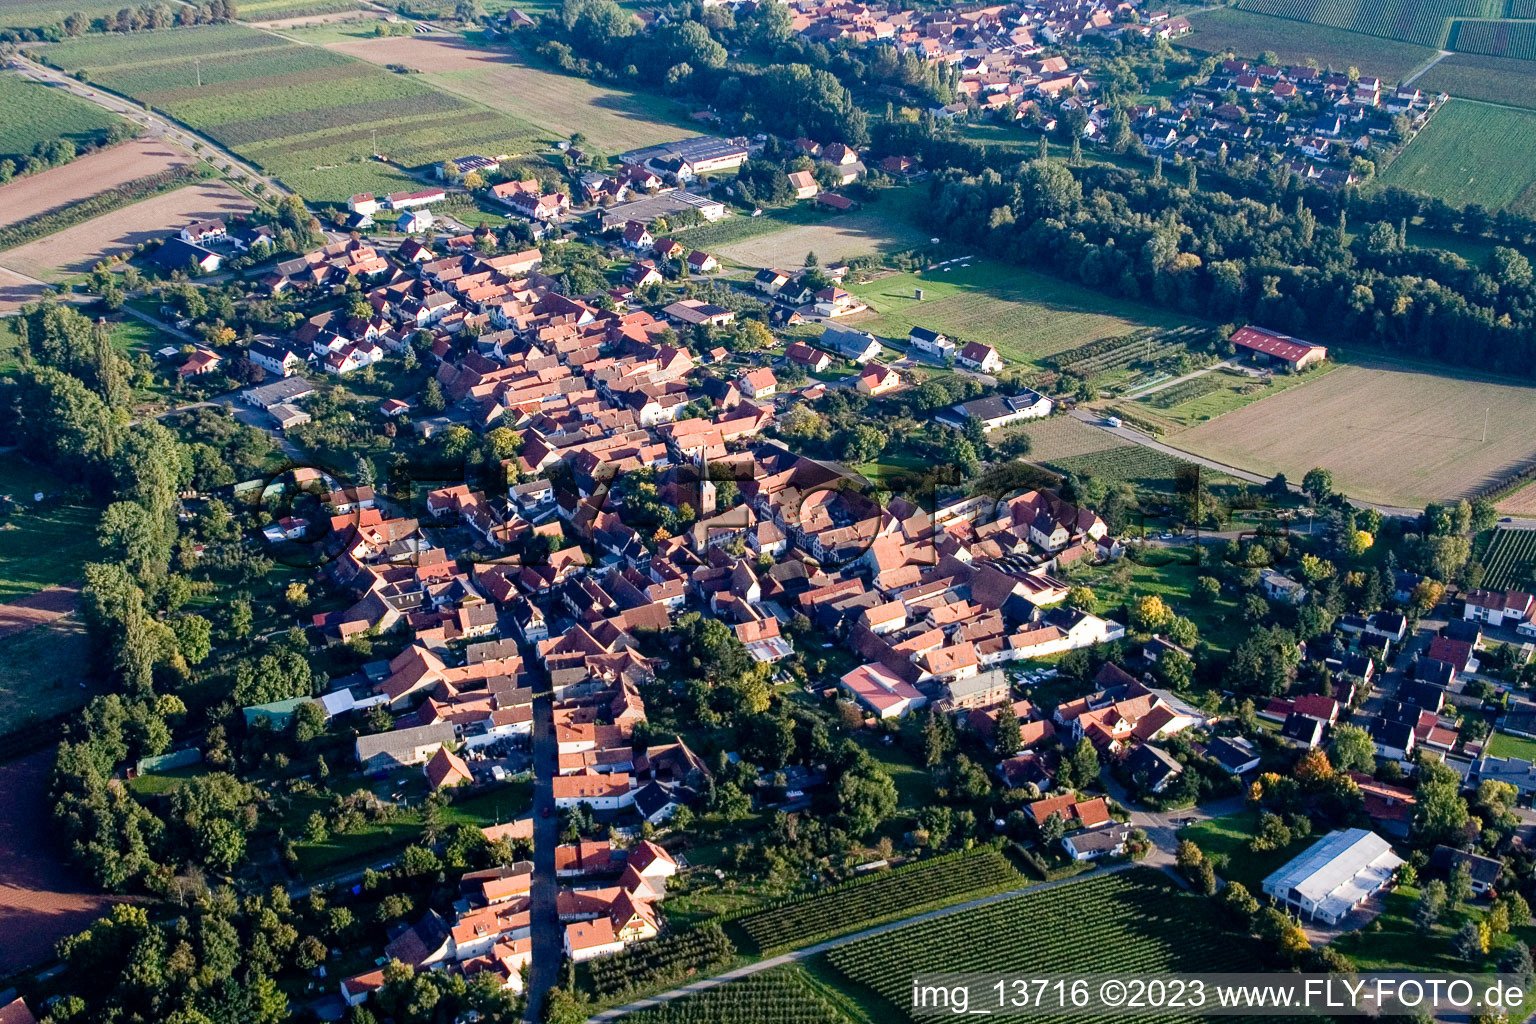 Oblique view of District Heuchelheim in Heuchelheim-Klingen in the state Rhineland-Palatinate, Germany